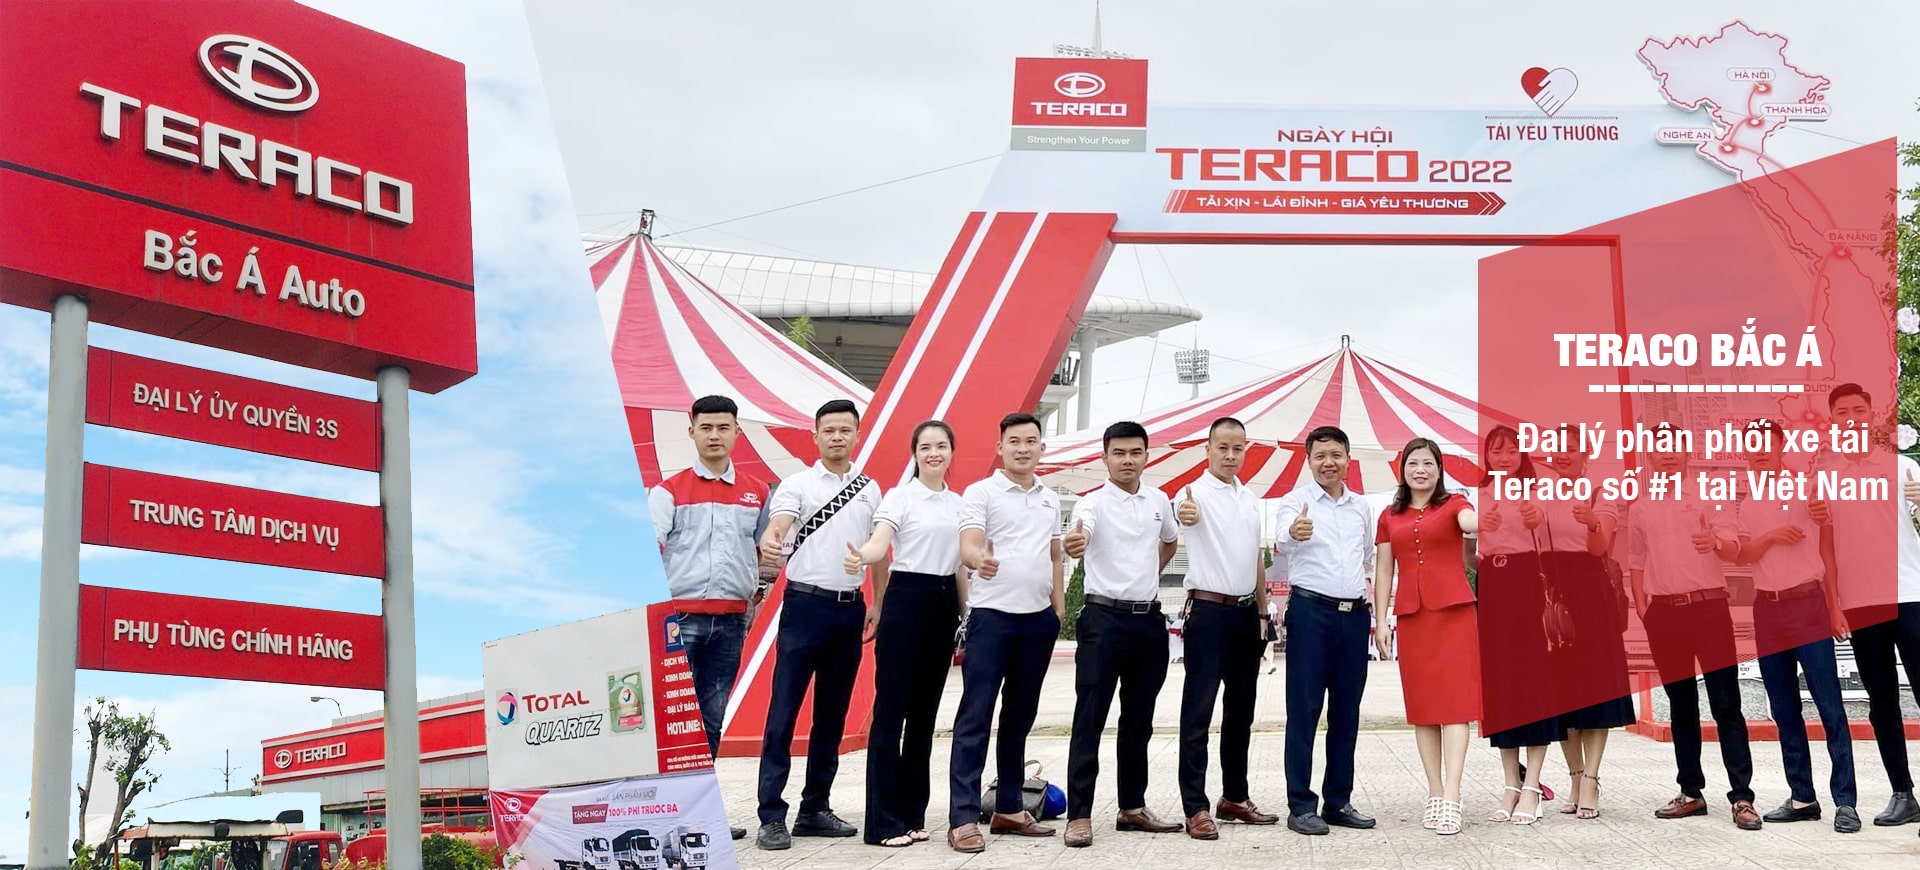 Đại lý bán xe Tera 100 uy tín tại Hà Nội và các tỉnh phía Bắc